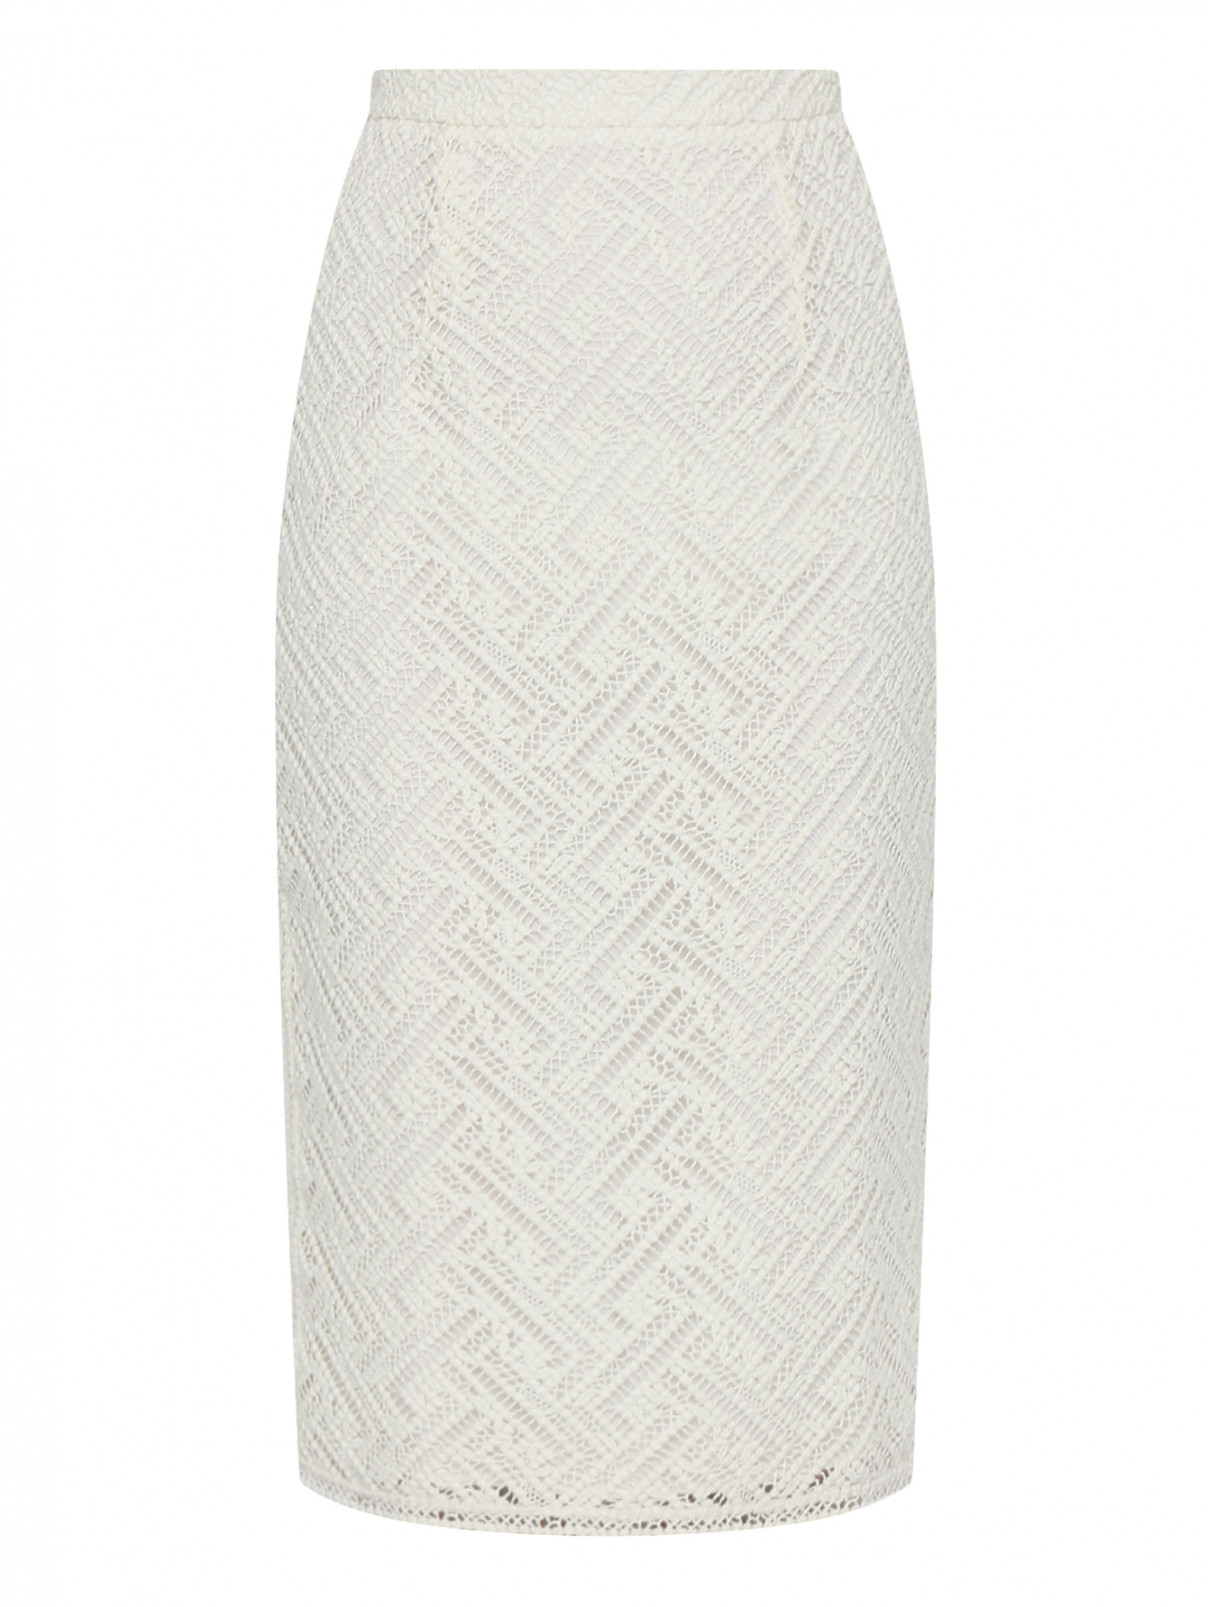 Ажурная юбка-карандаш из шерсти Ermanno Scervino  –  Общий вид  – Цвет:  Белый